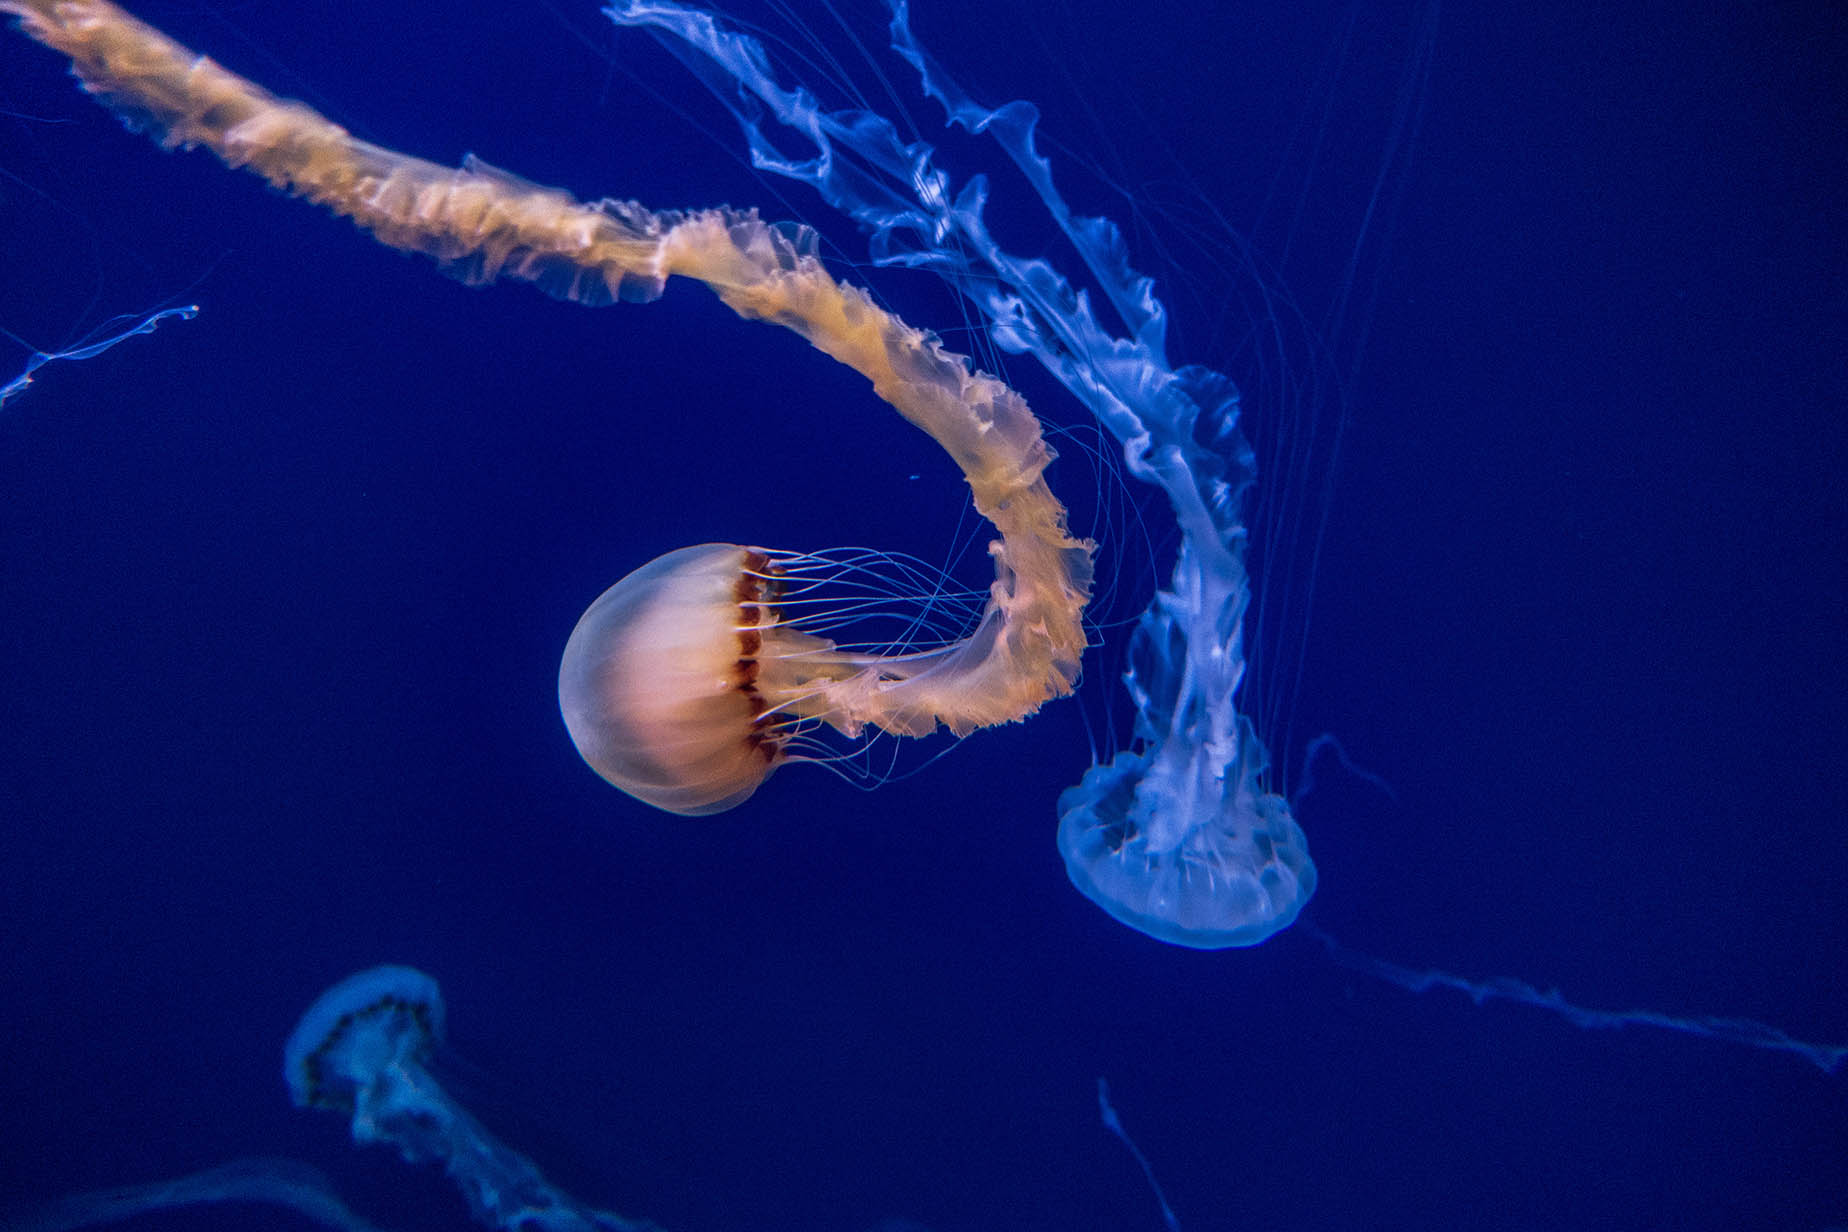 okinawa jellyfish